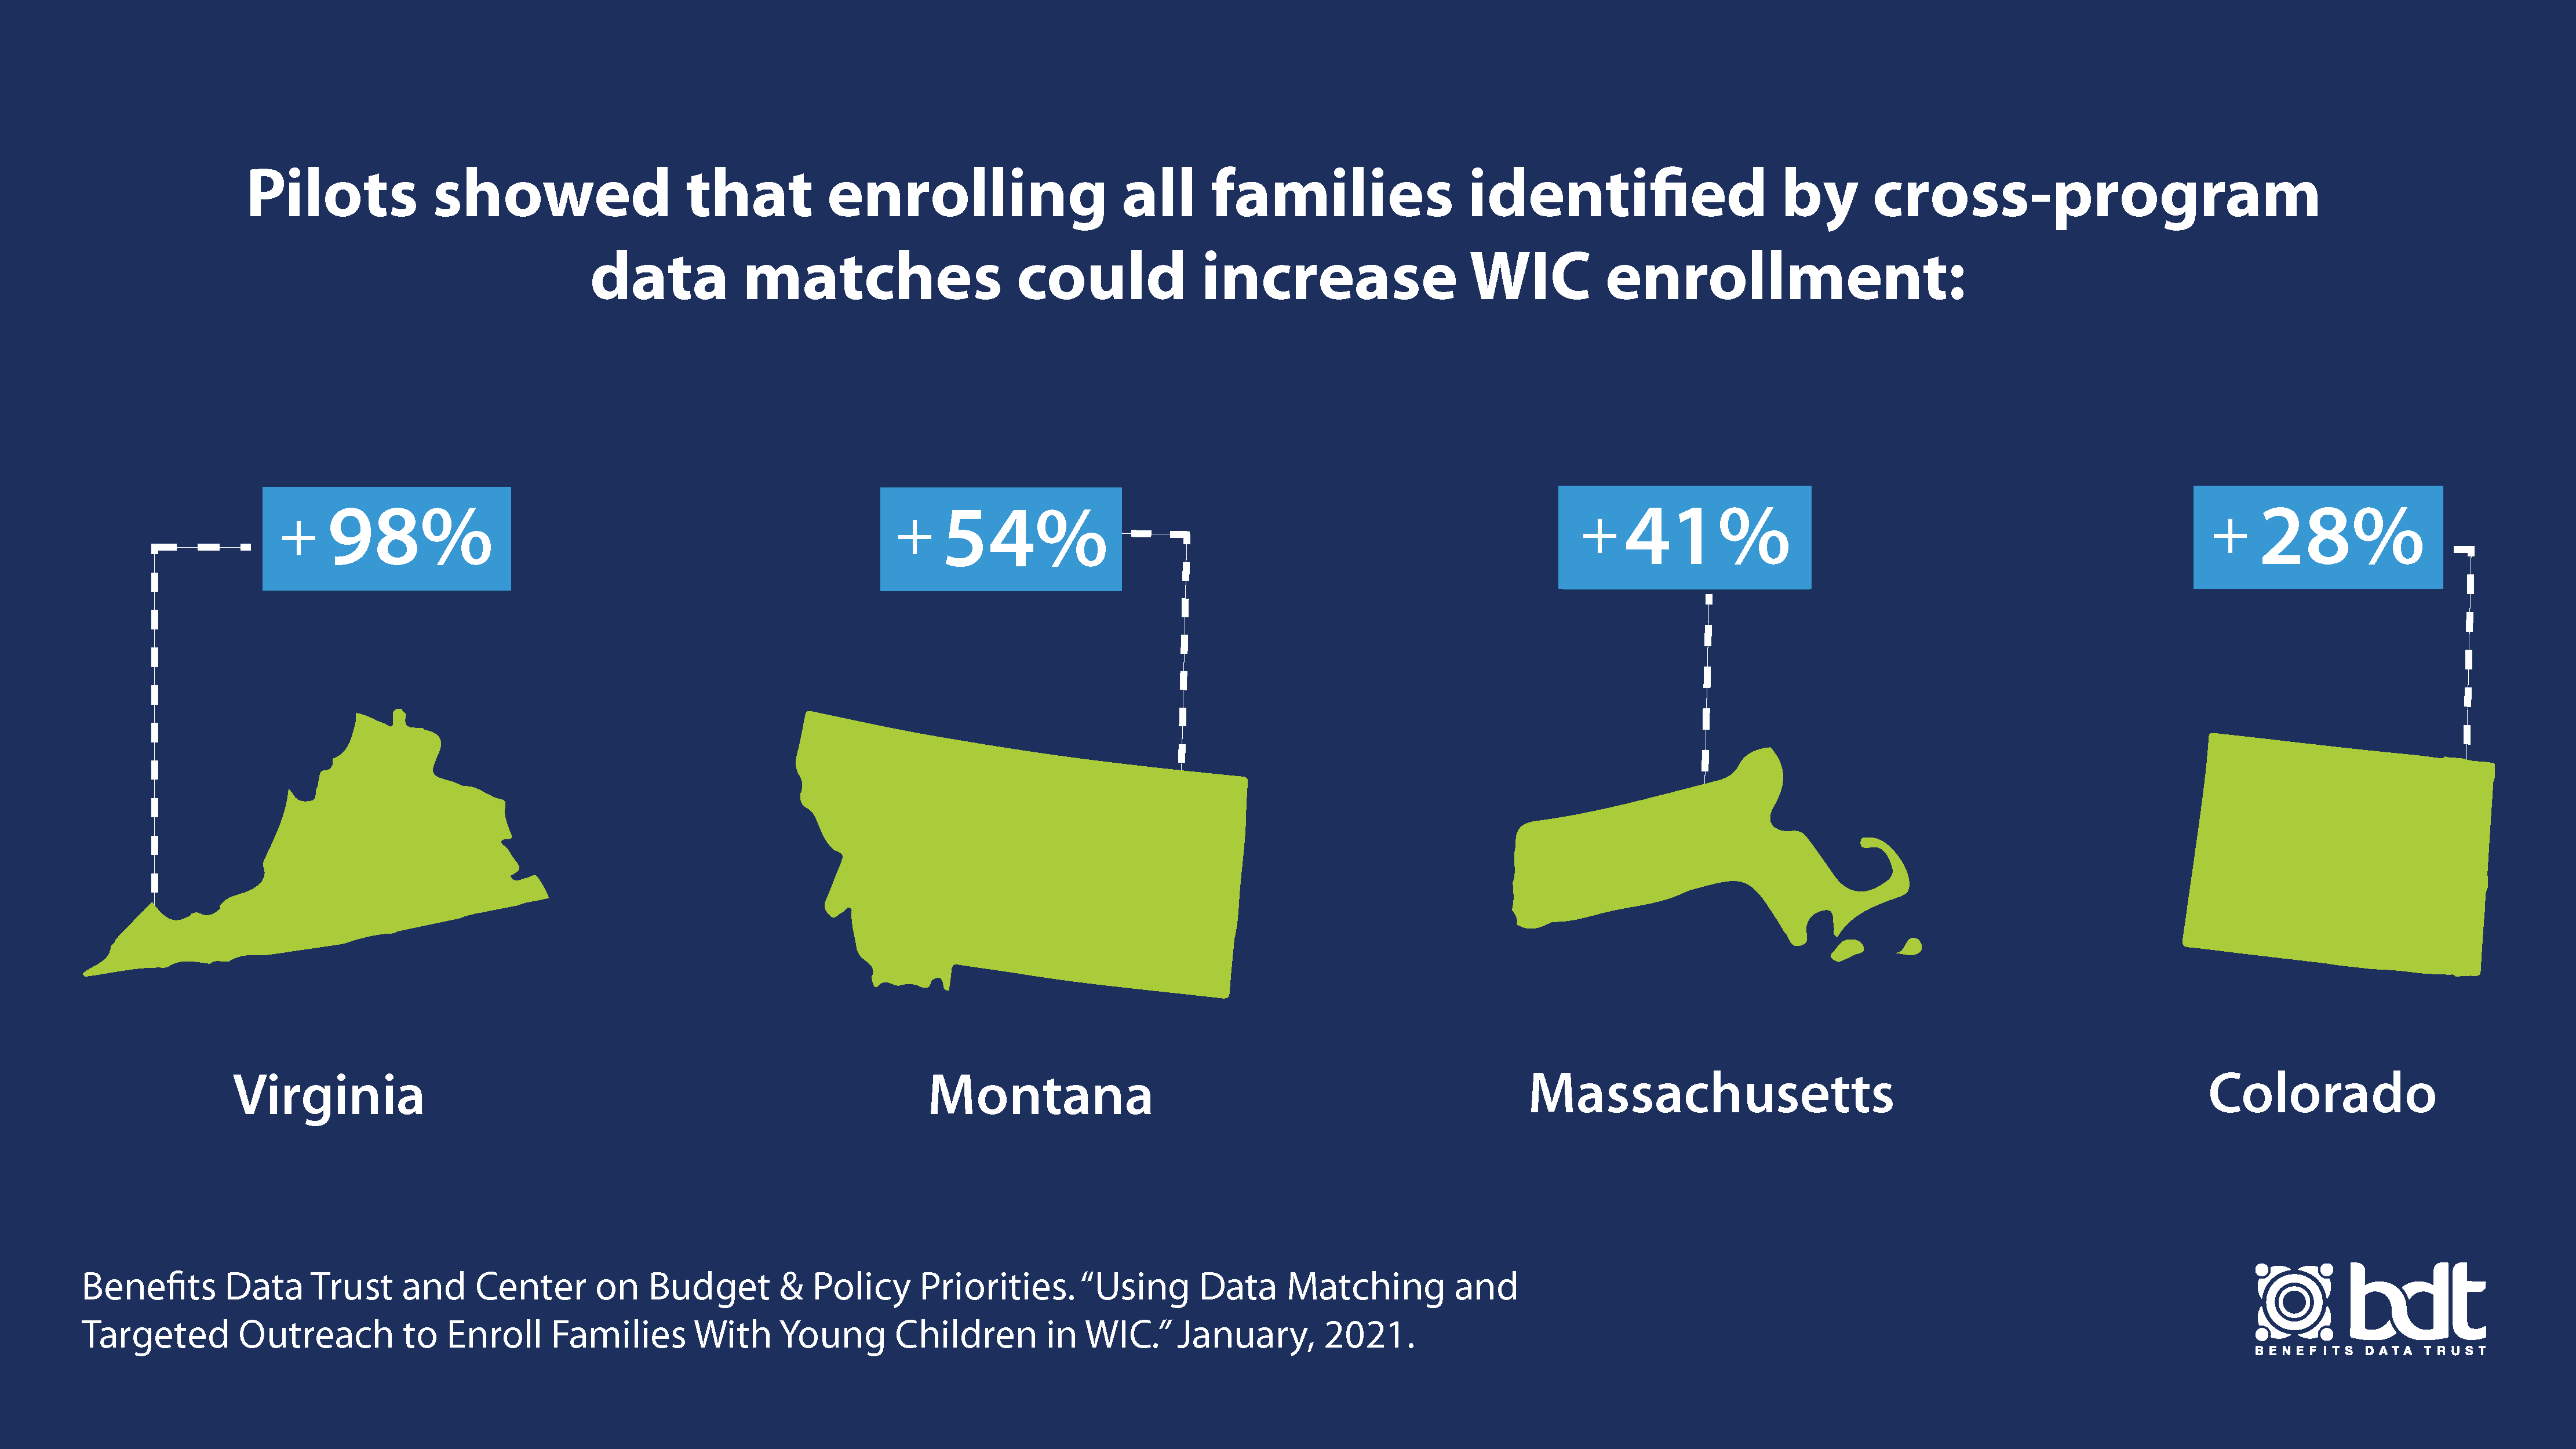 WIC enrollment in VA, MT, MA and CO